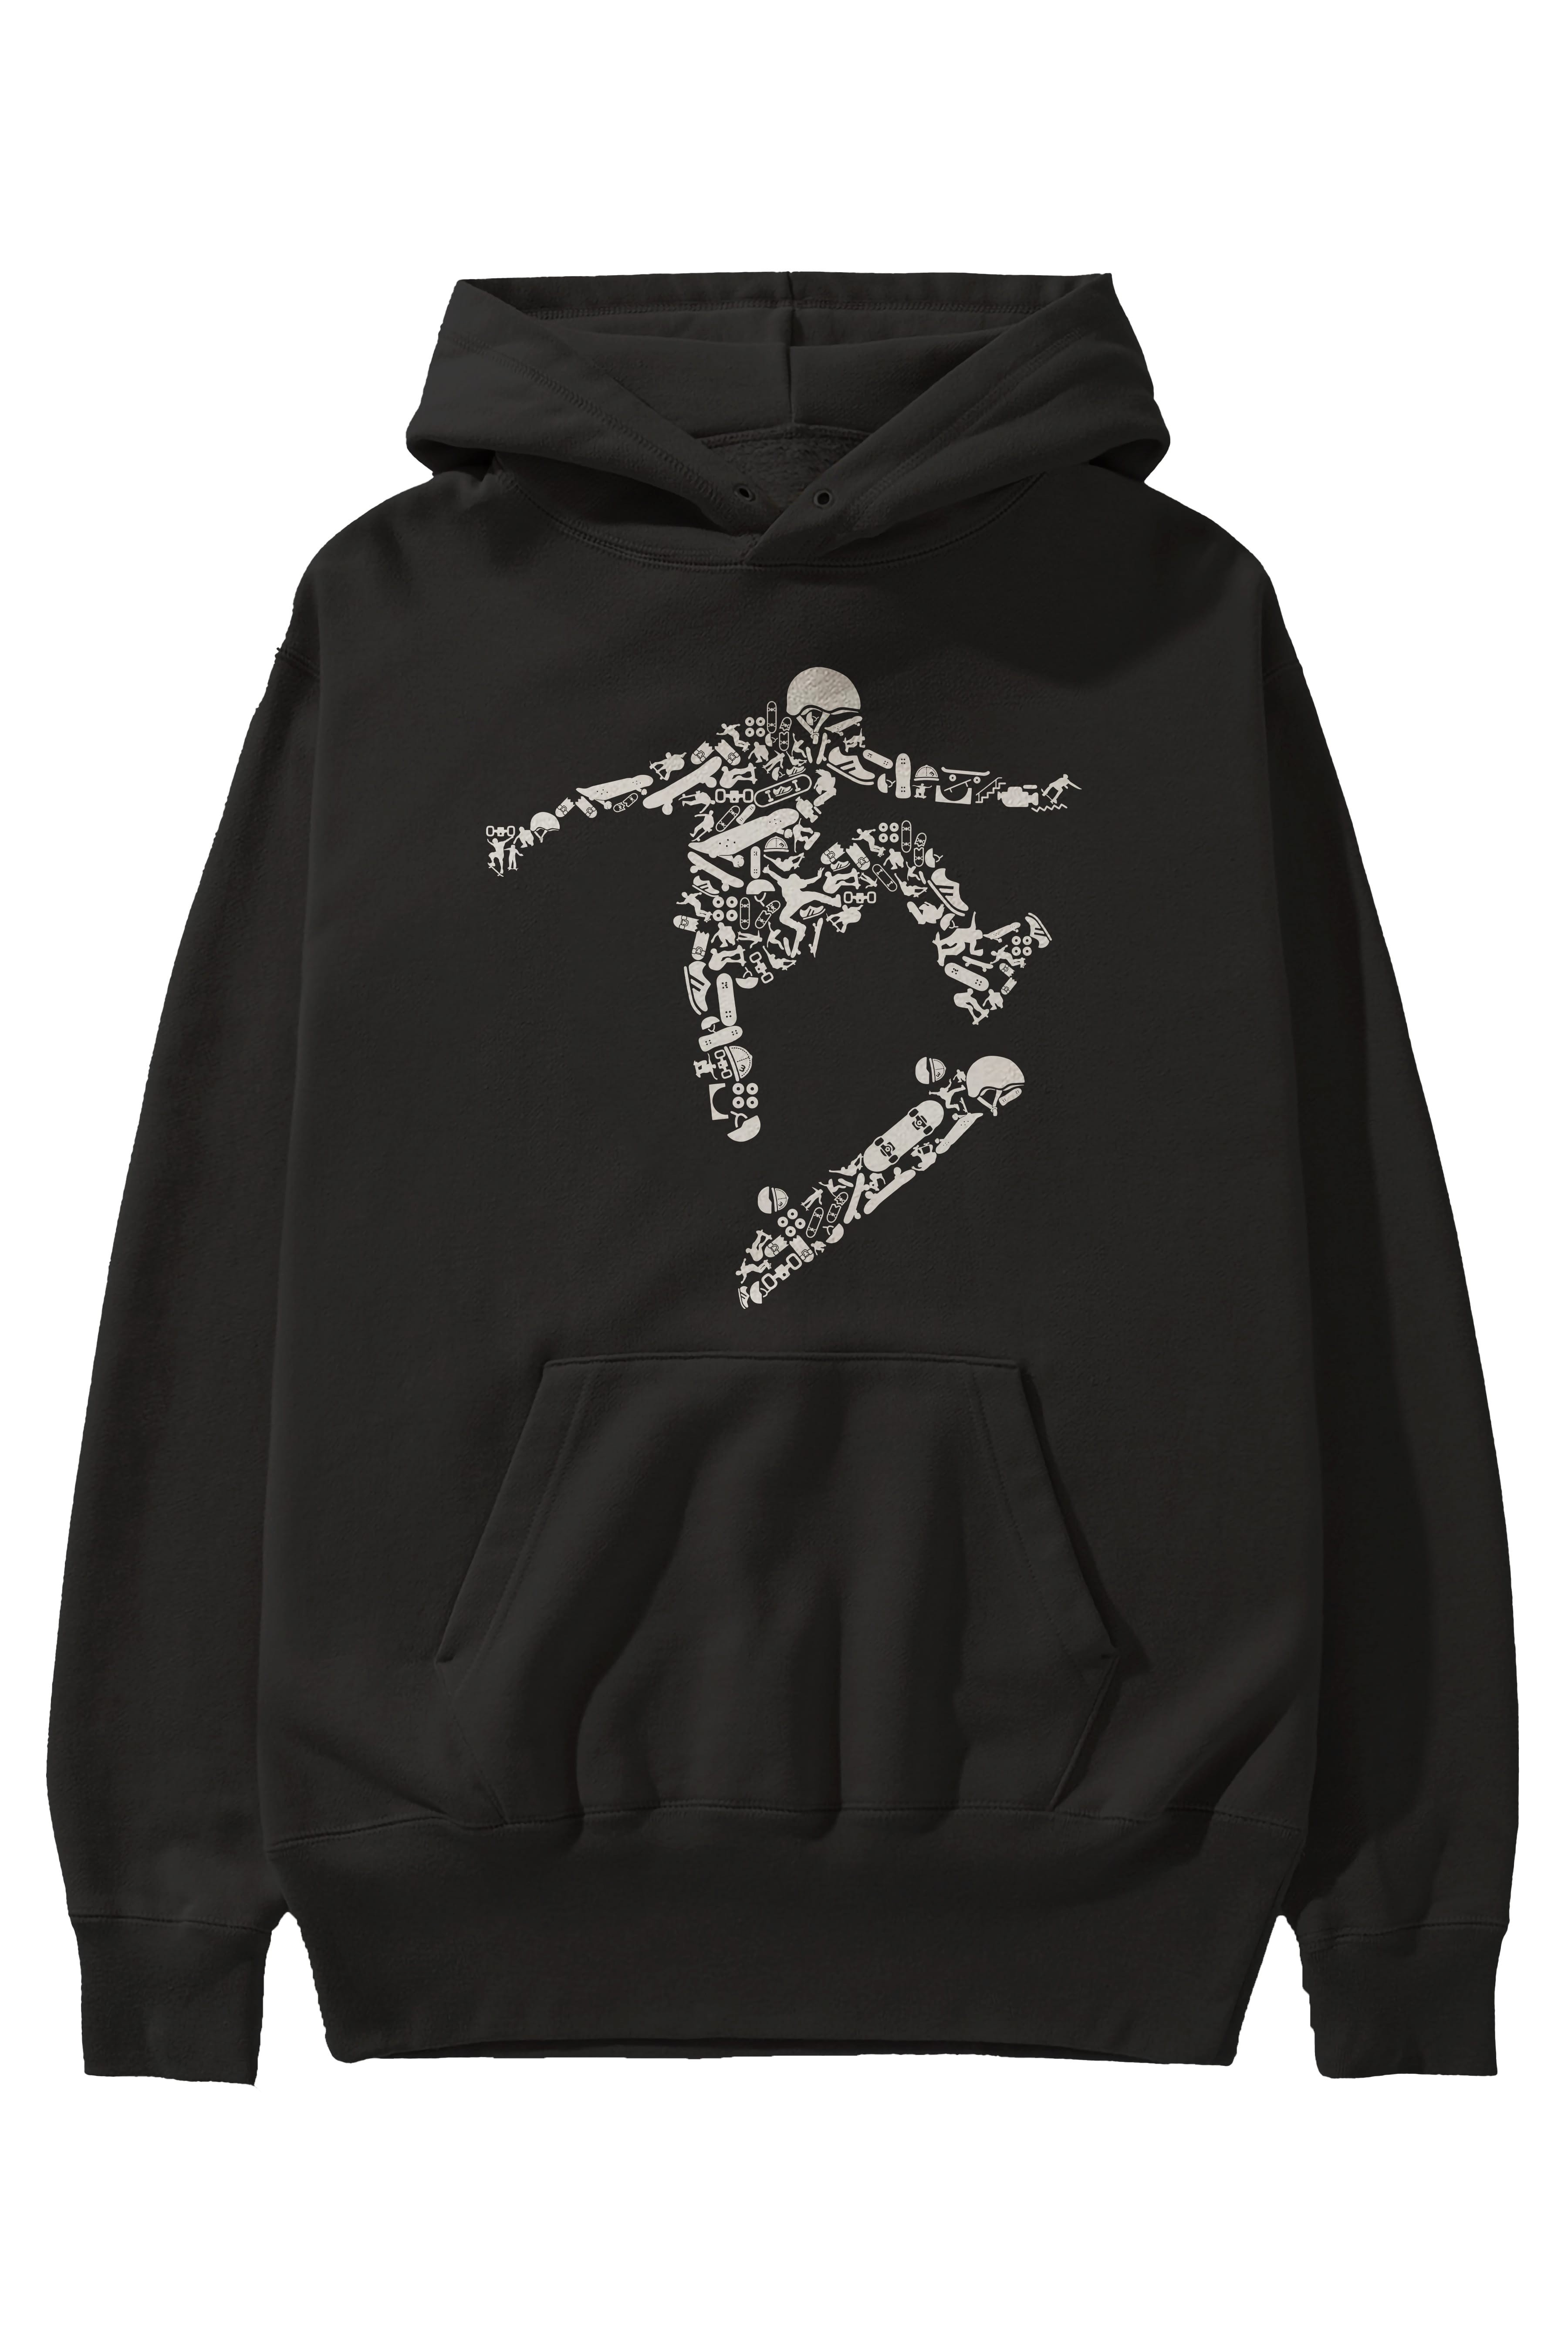 Skater Ön Baskılı Hoodie Oversize Kapüşonlu Sweatshirt Erkek Kadın Unisex